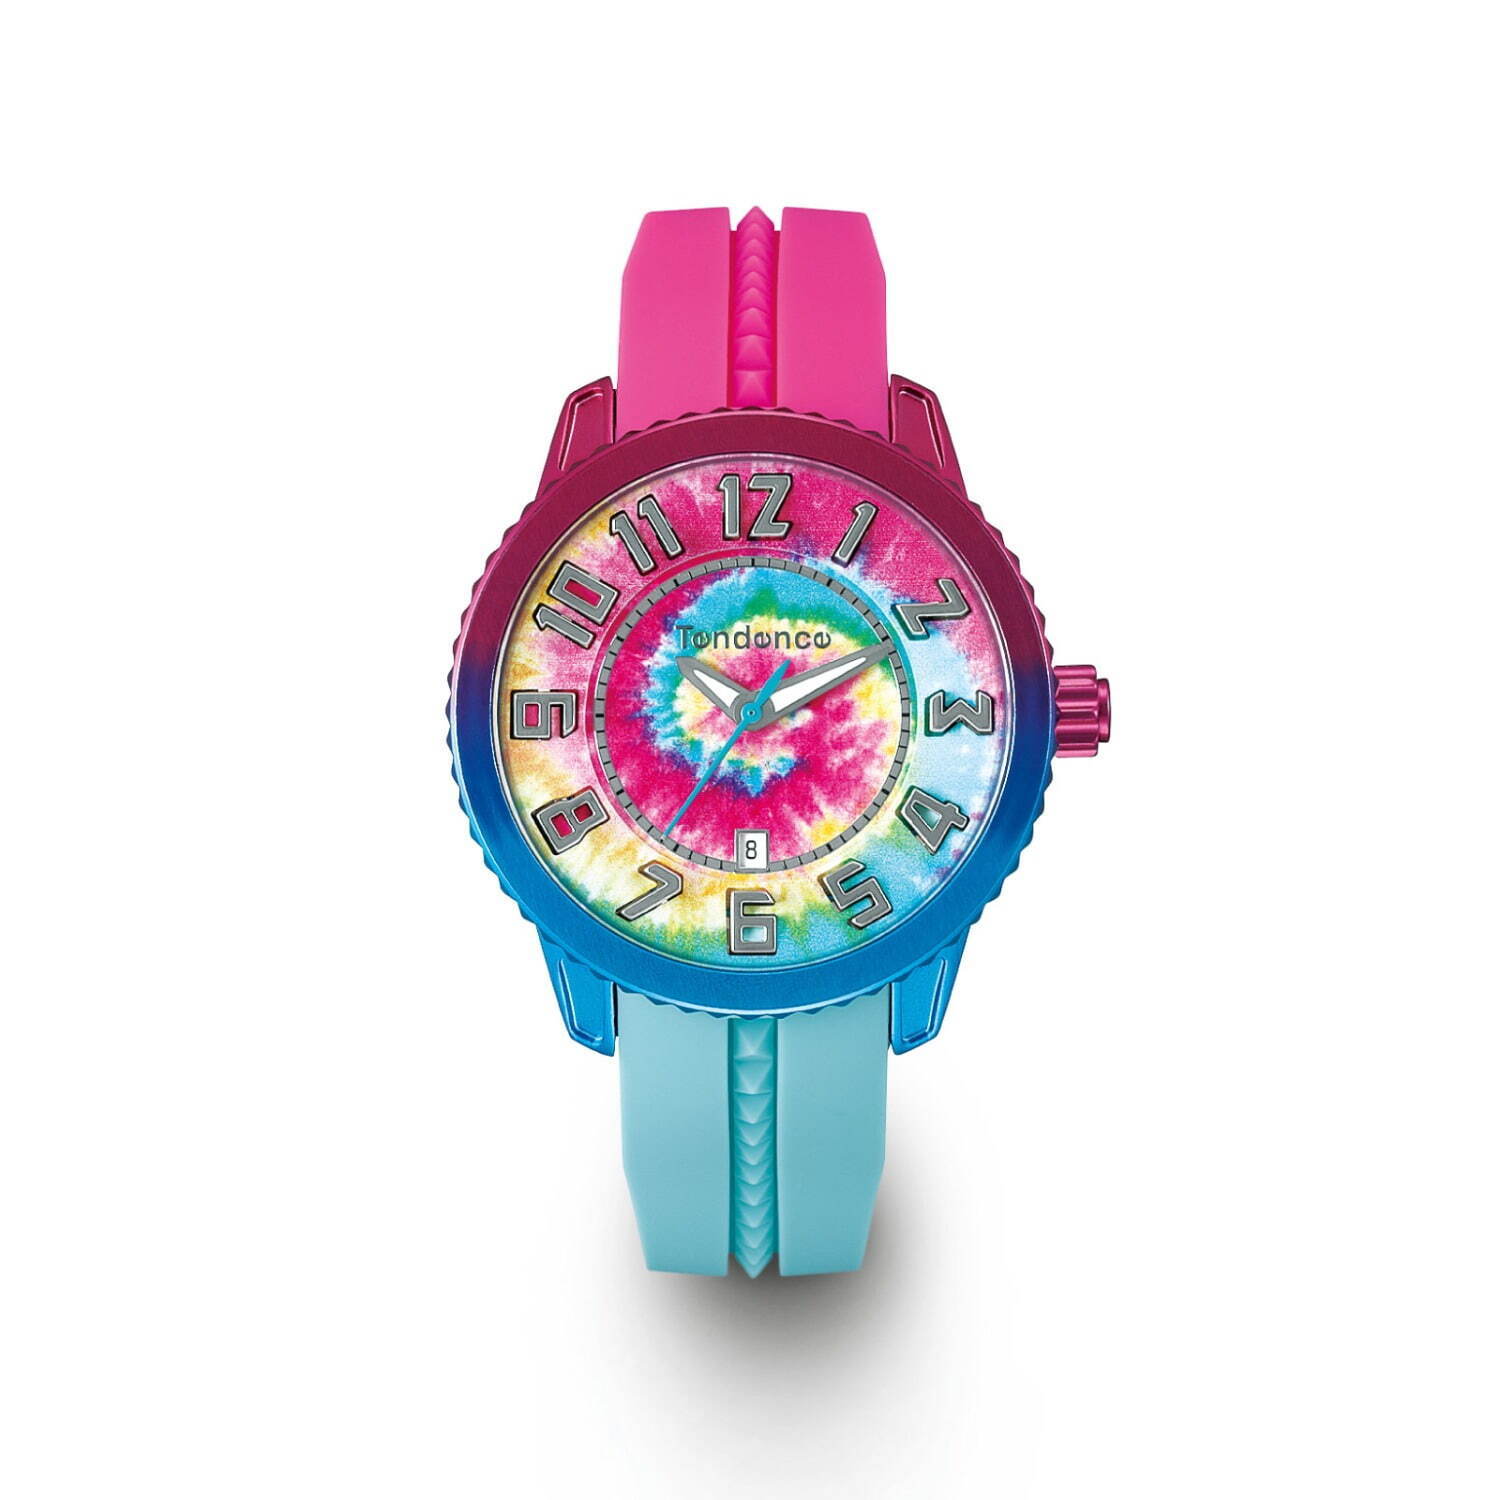 テンデンス“タイダイ柄”の腕時計、インデックスが光る「フラッシュ」に 